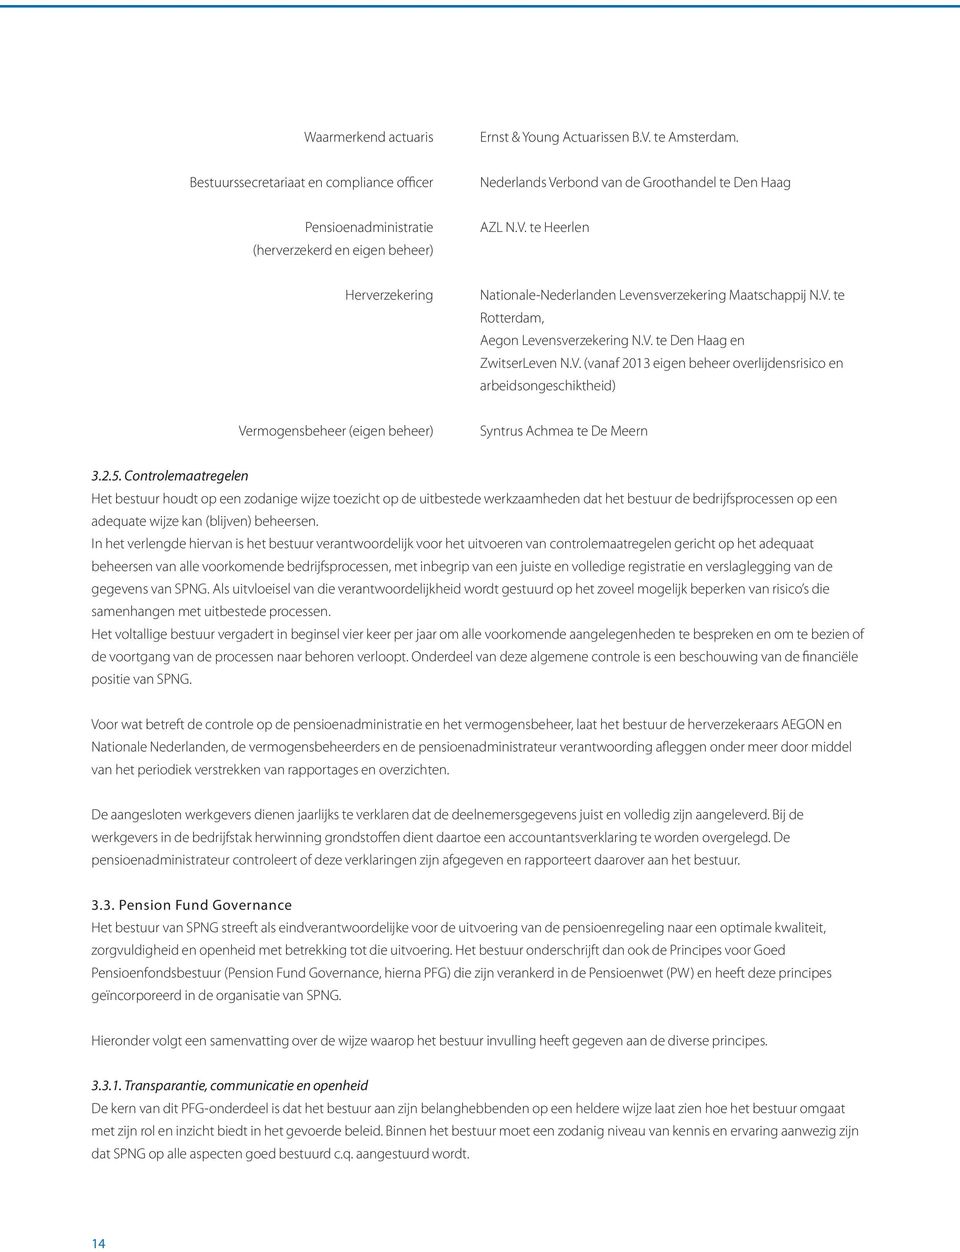 V. te Rotterdam, Aegon Levensverzekering N.V. te Den Haag en ZwitserLeven N.V. (vanaf 2013 eigen beheer overlijdensrisico en arbeidsongeschiktheid) Vermogensbeheer (eigen beheer) Syntrus Achmea te De Meern 3.